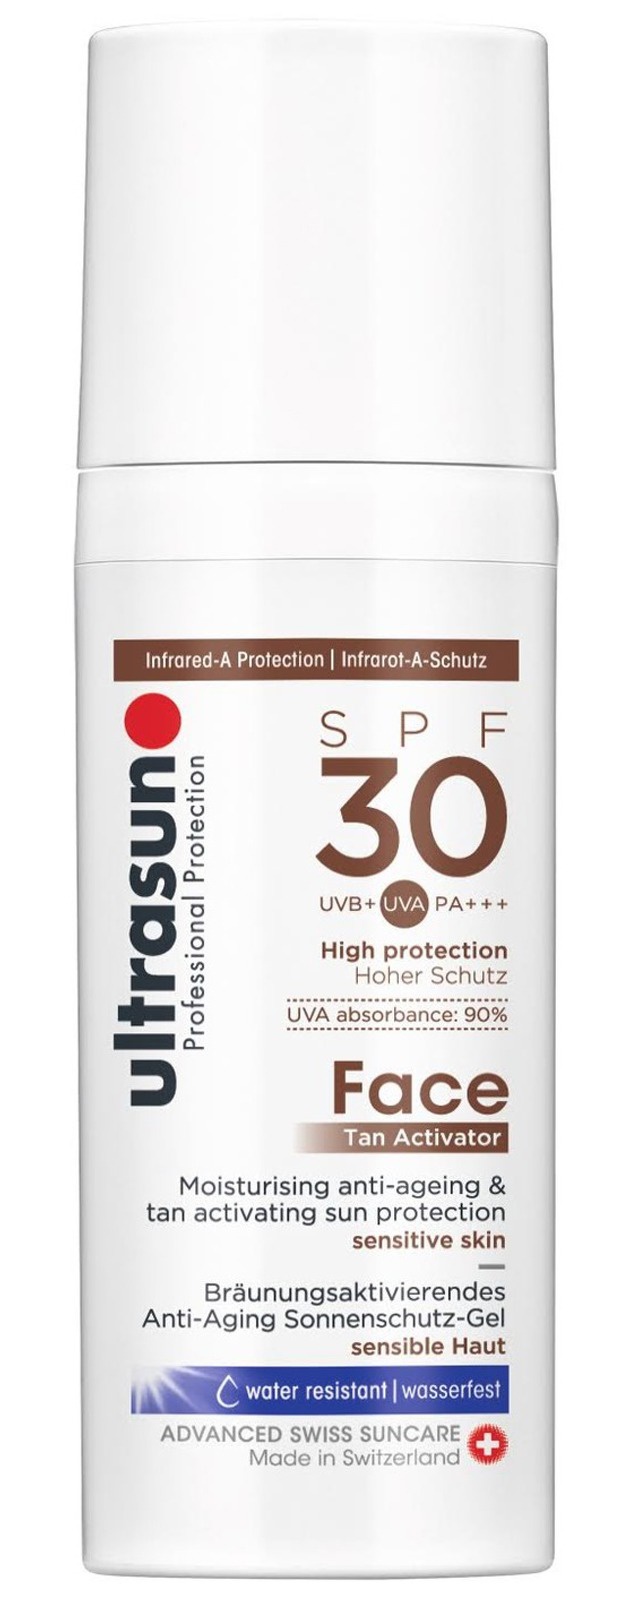 Ultrasun Face Tan Activator SPF30